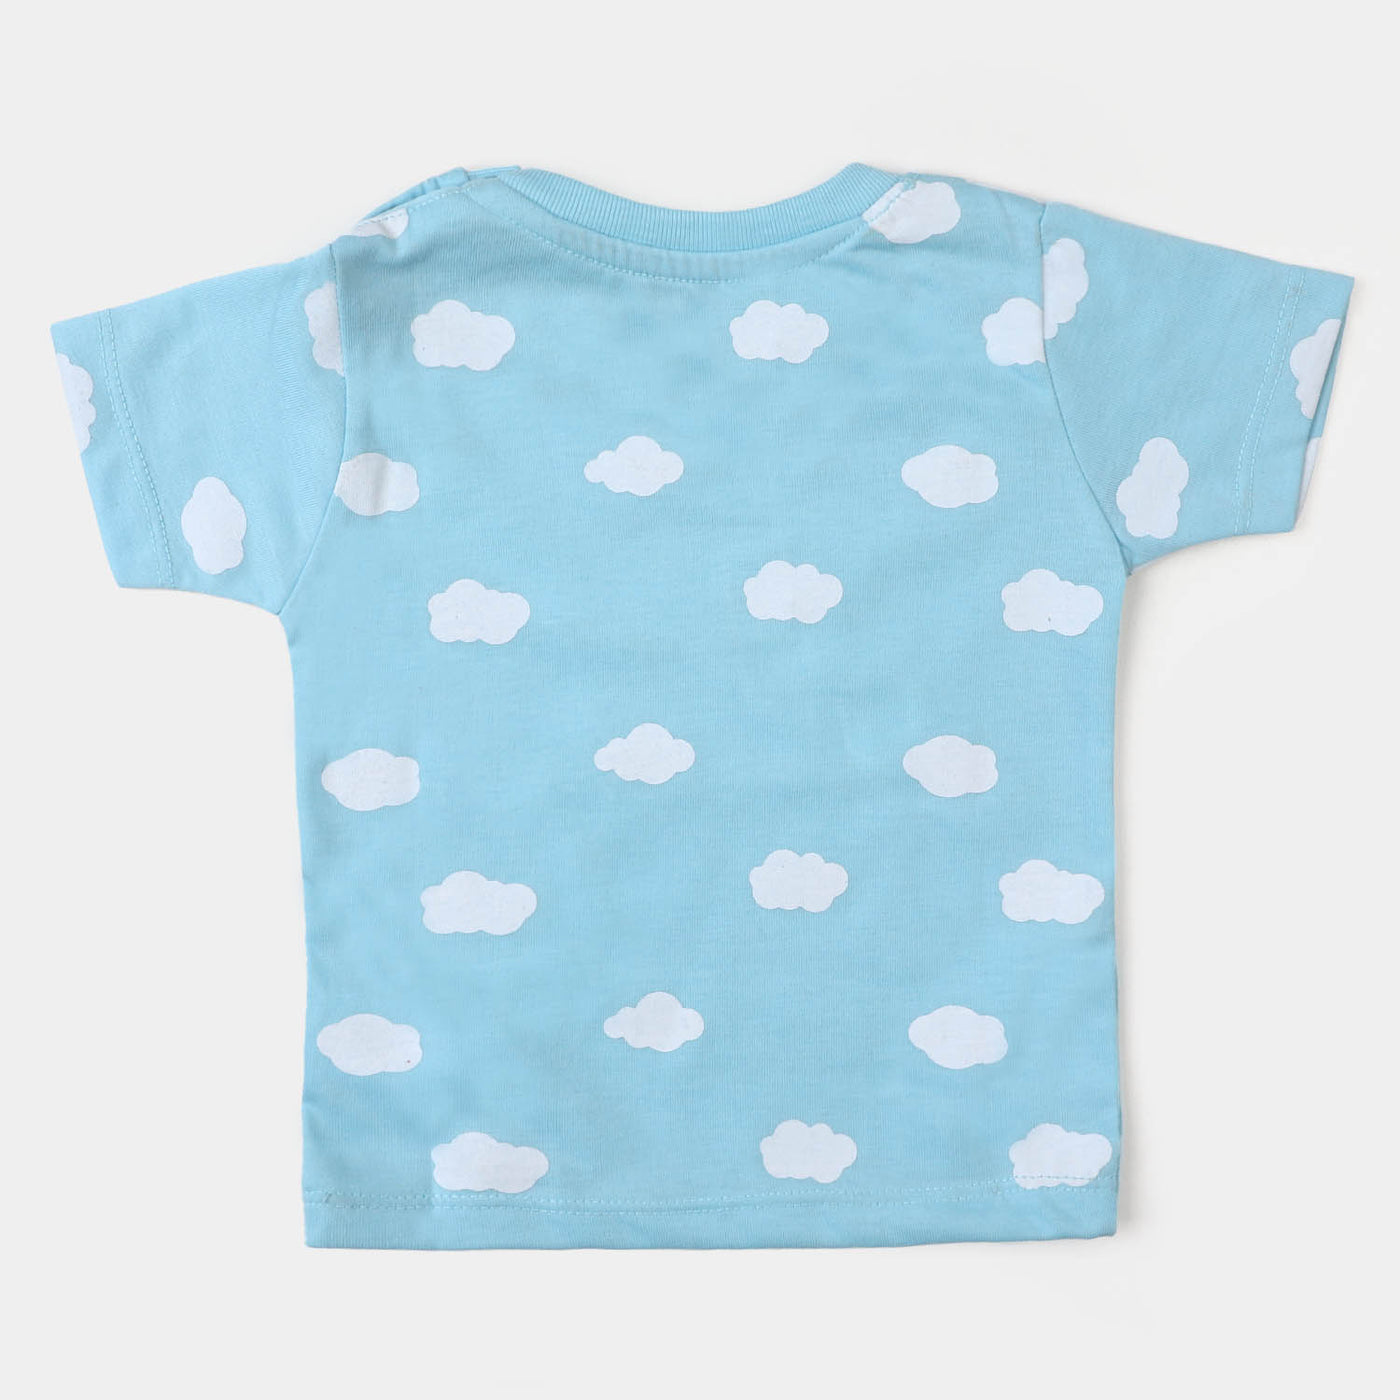 Infant Boys Cotton Night Suit Dreamer - Blue